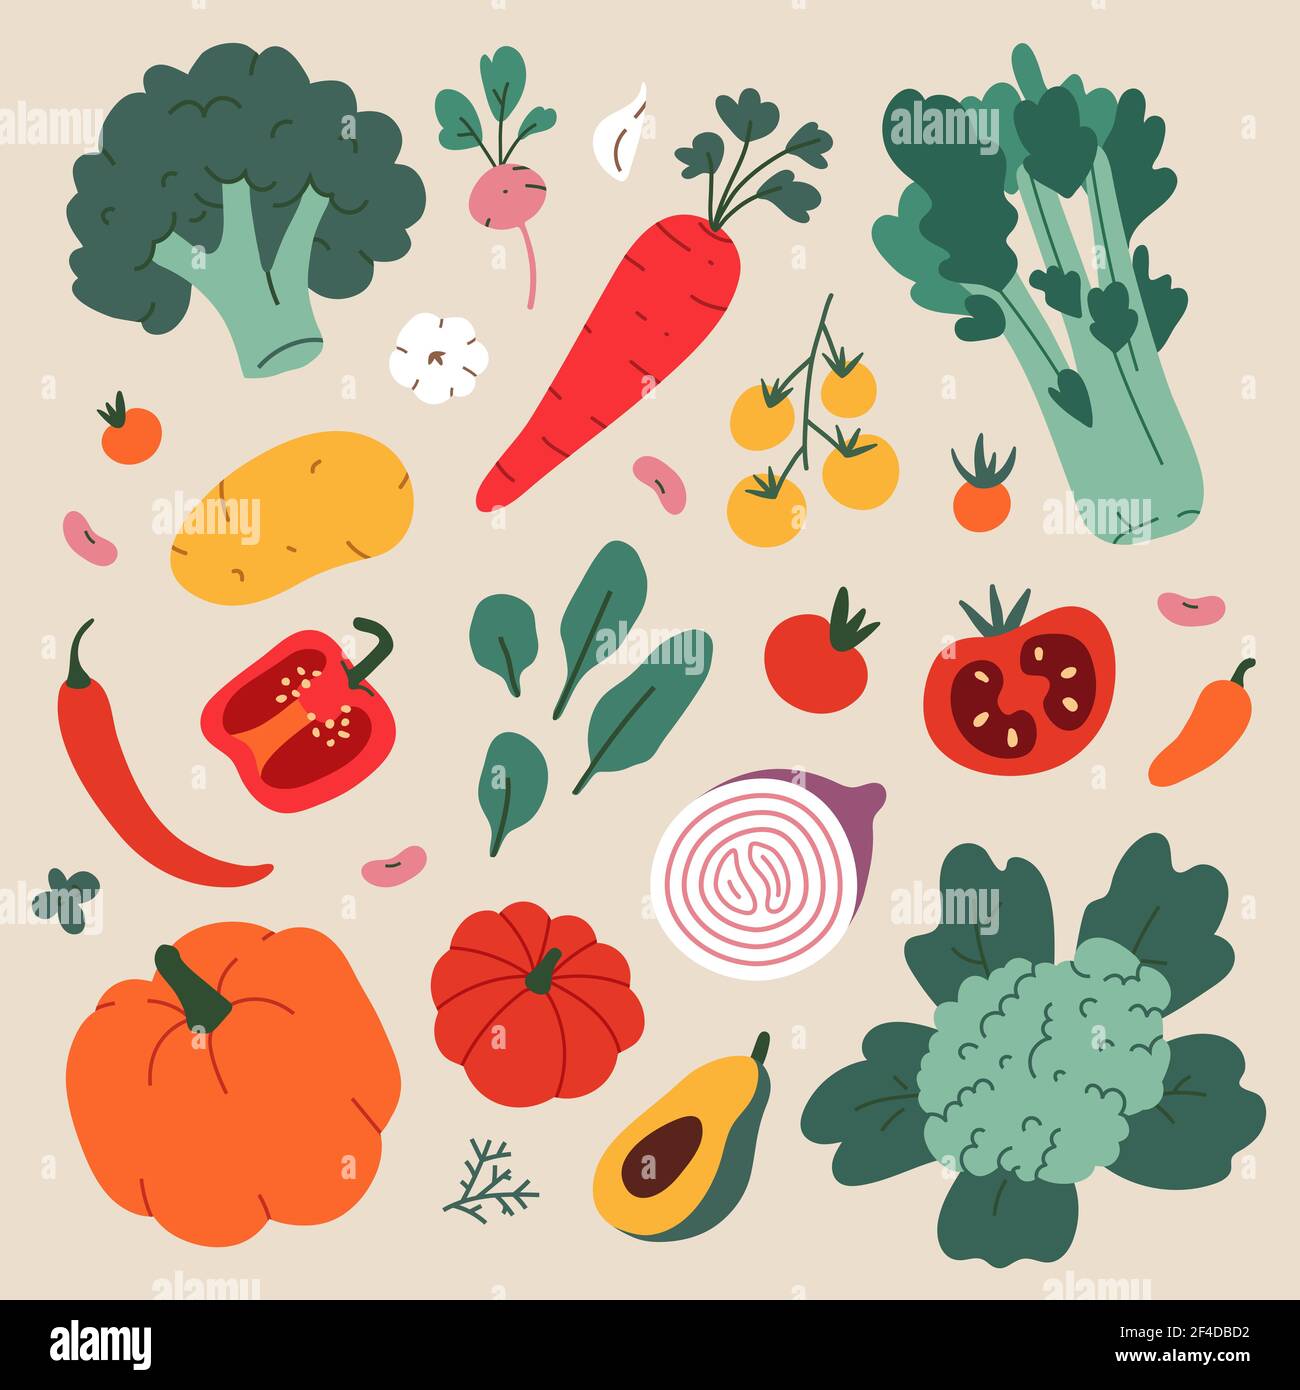 Pflanzliche Lebensmittel Illustration, moderne Zeichnung von Brokkoli, Blumenkohl und Sellerie, gesunde Ernährung Kochen Zutaten, Vektor-Cliparts Stock Vektor